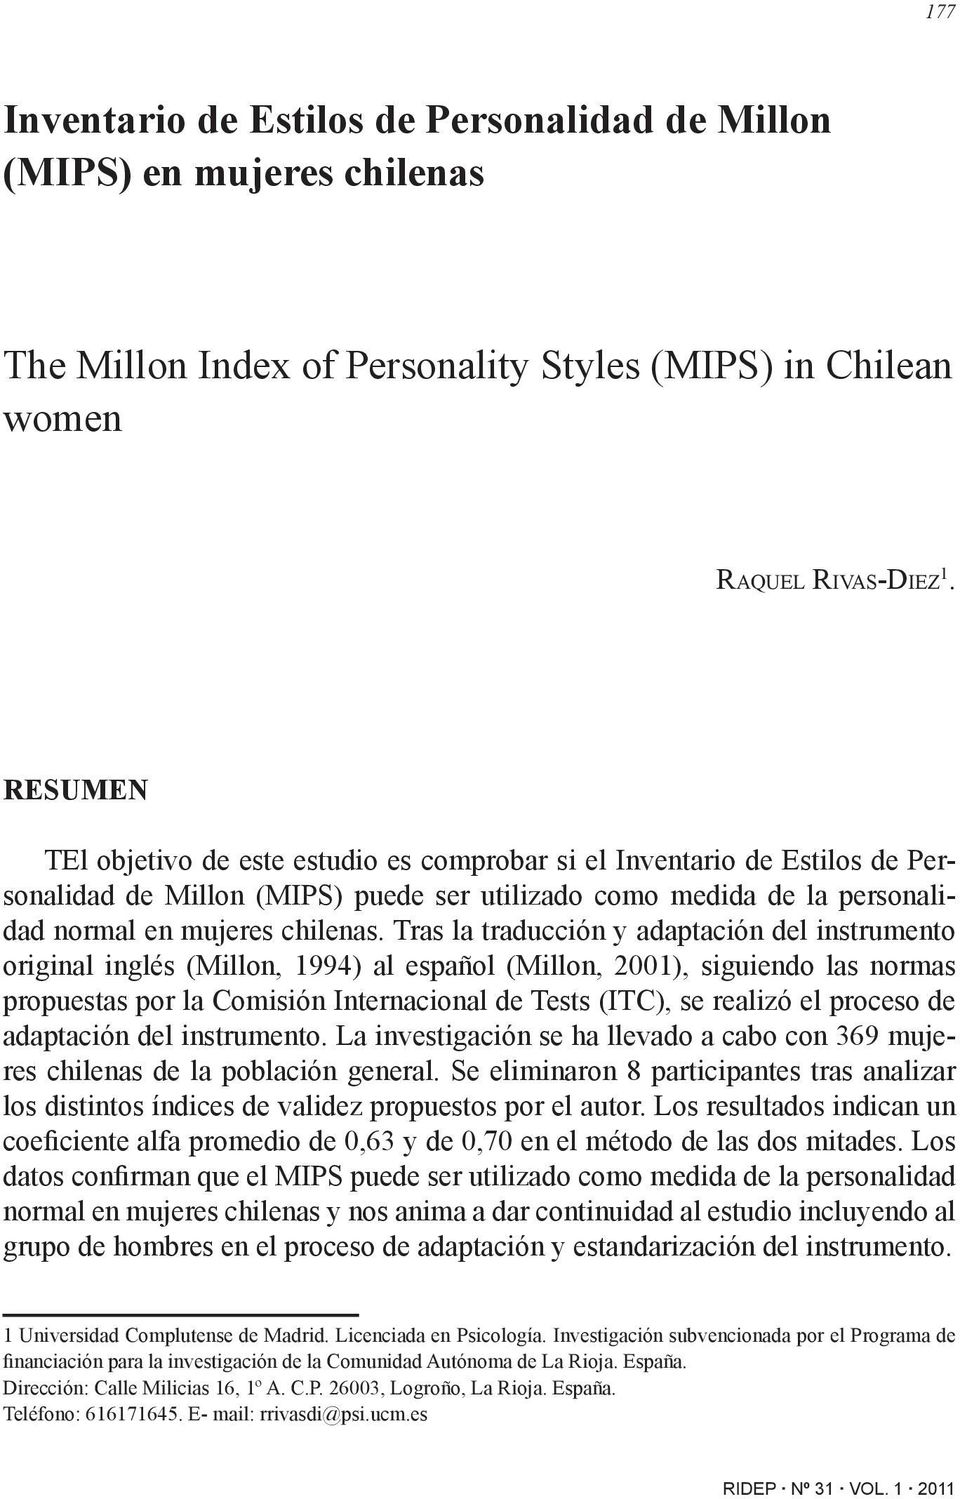 Tras la traducción y adaptación del instrumento original inglés (Millon, 1994) al español (Millon, 2001), siguiendo las normas propuestas por la Comisión Internacional de Tests (ITC), se realizó el